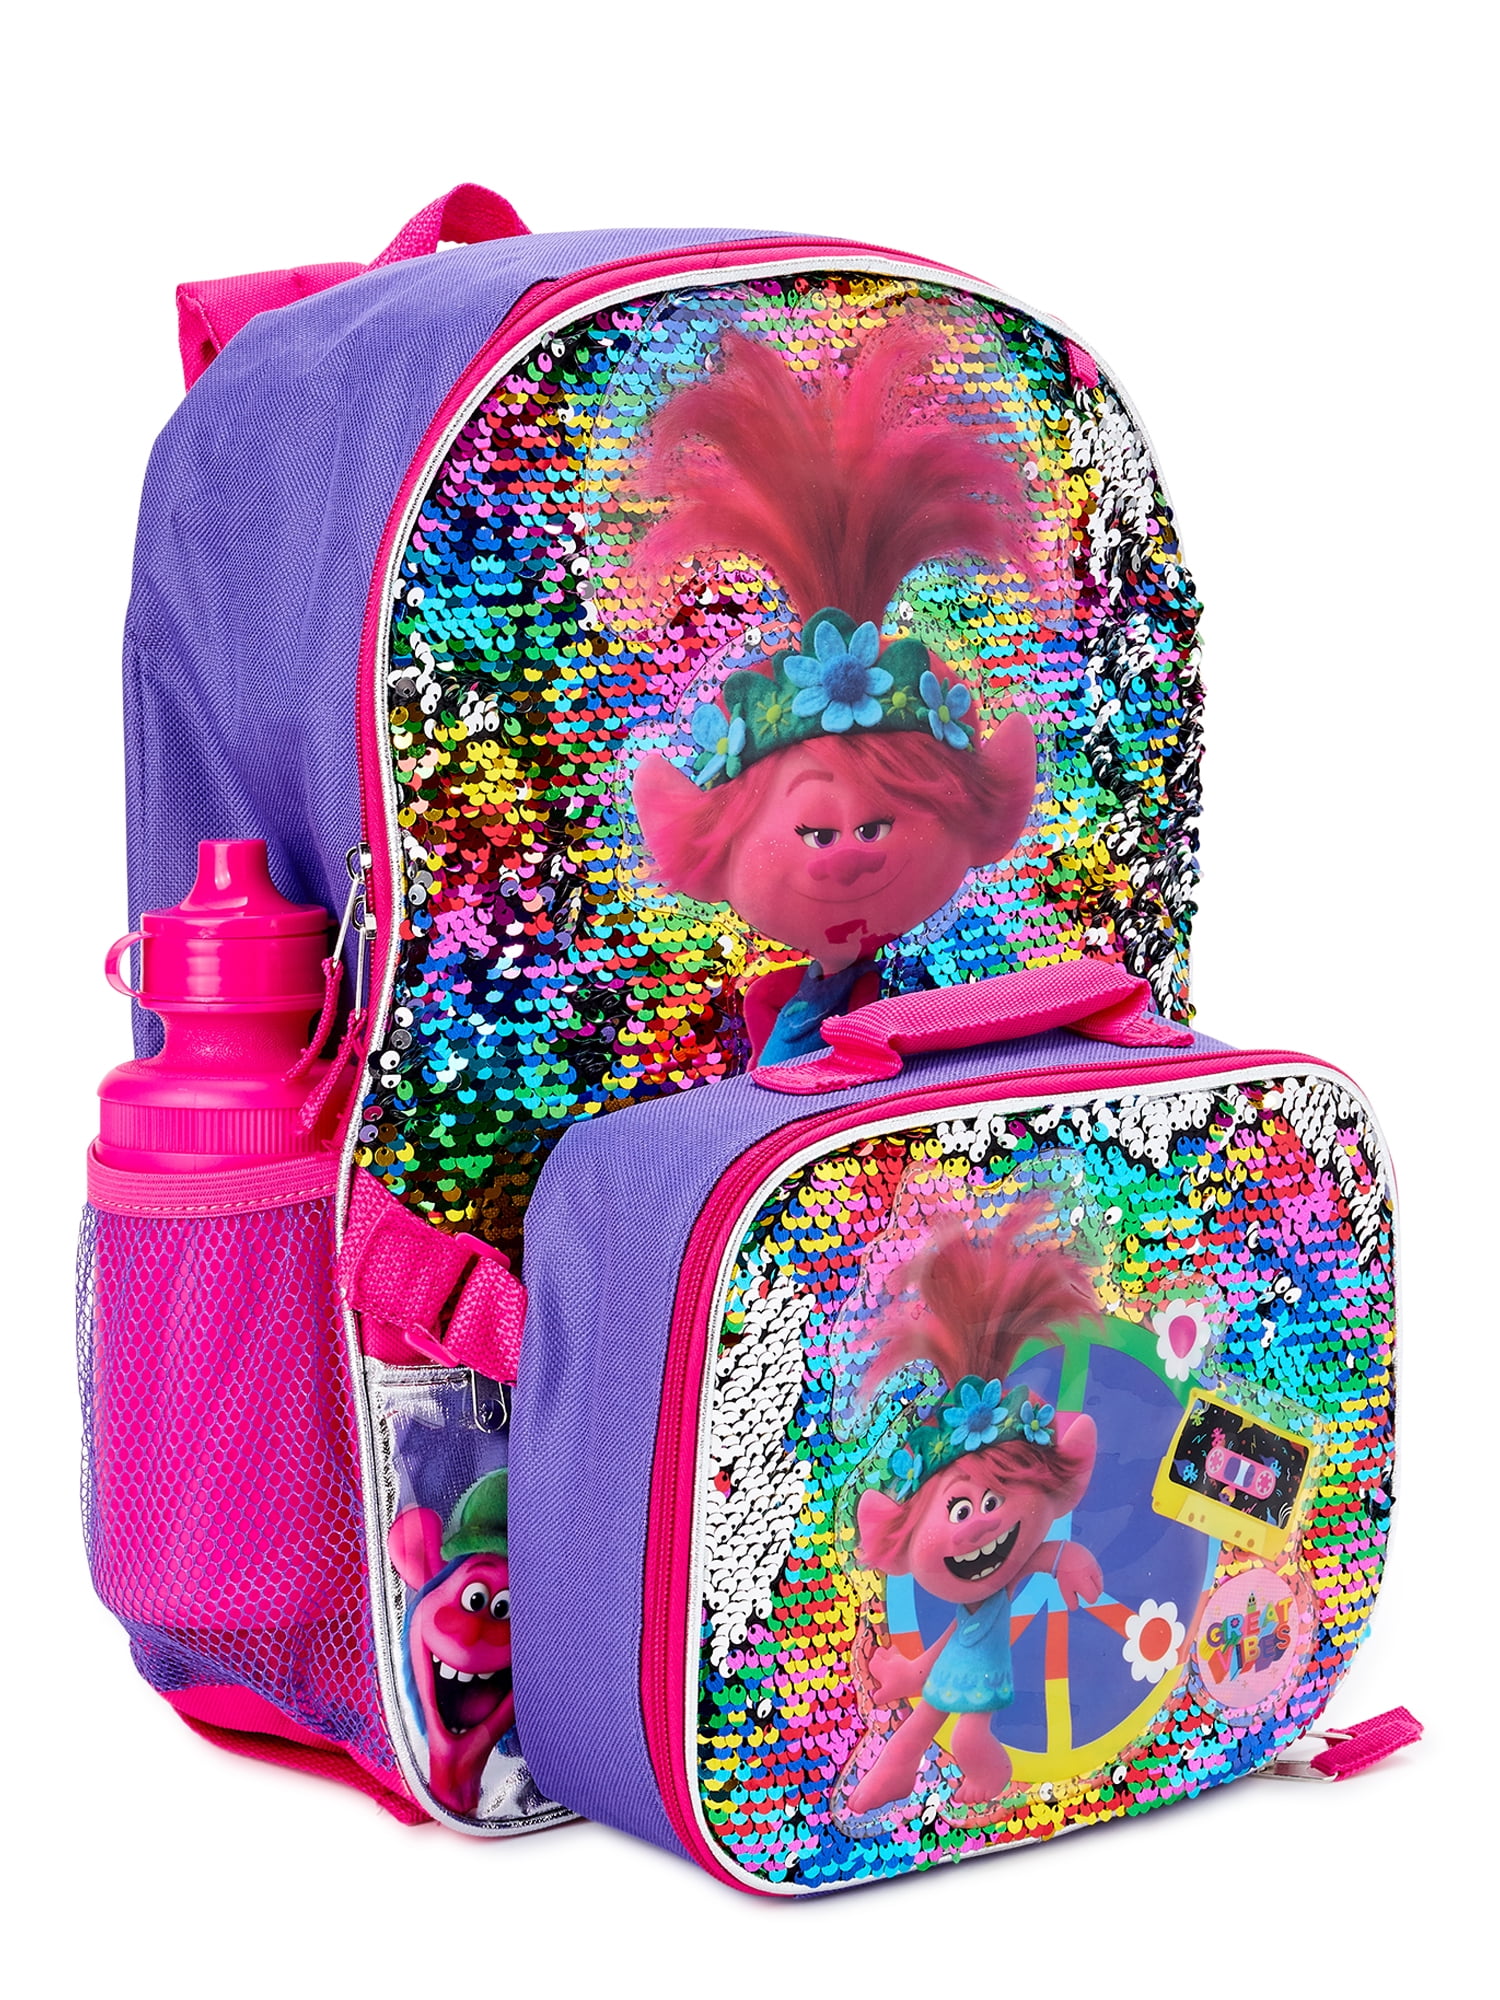 Trolls Poppy Girls Backpack 5 Piece Set! 